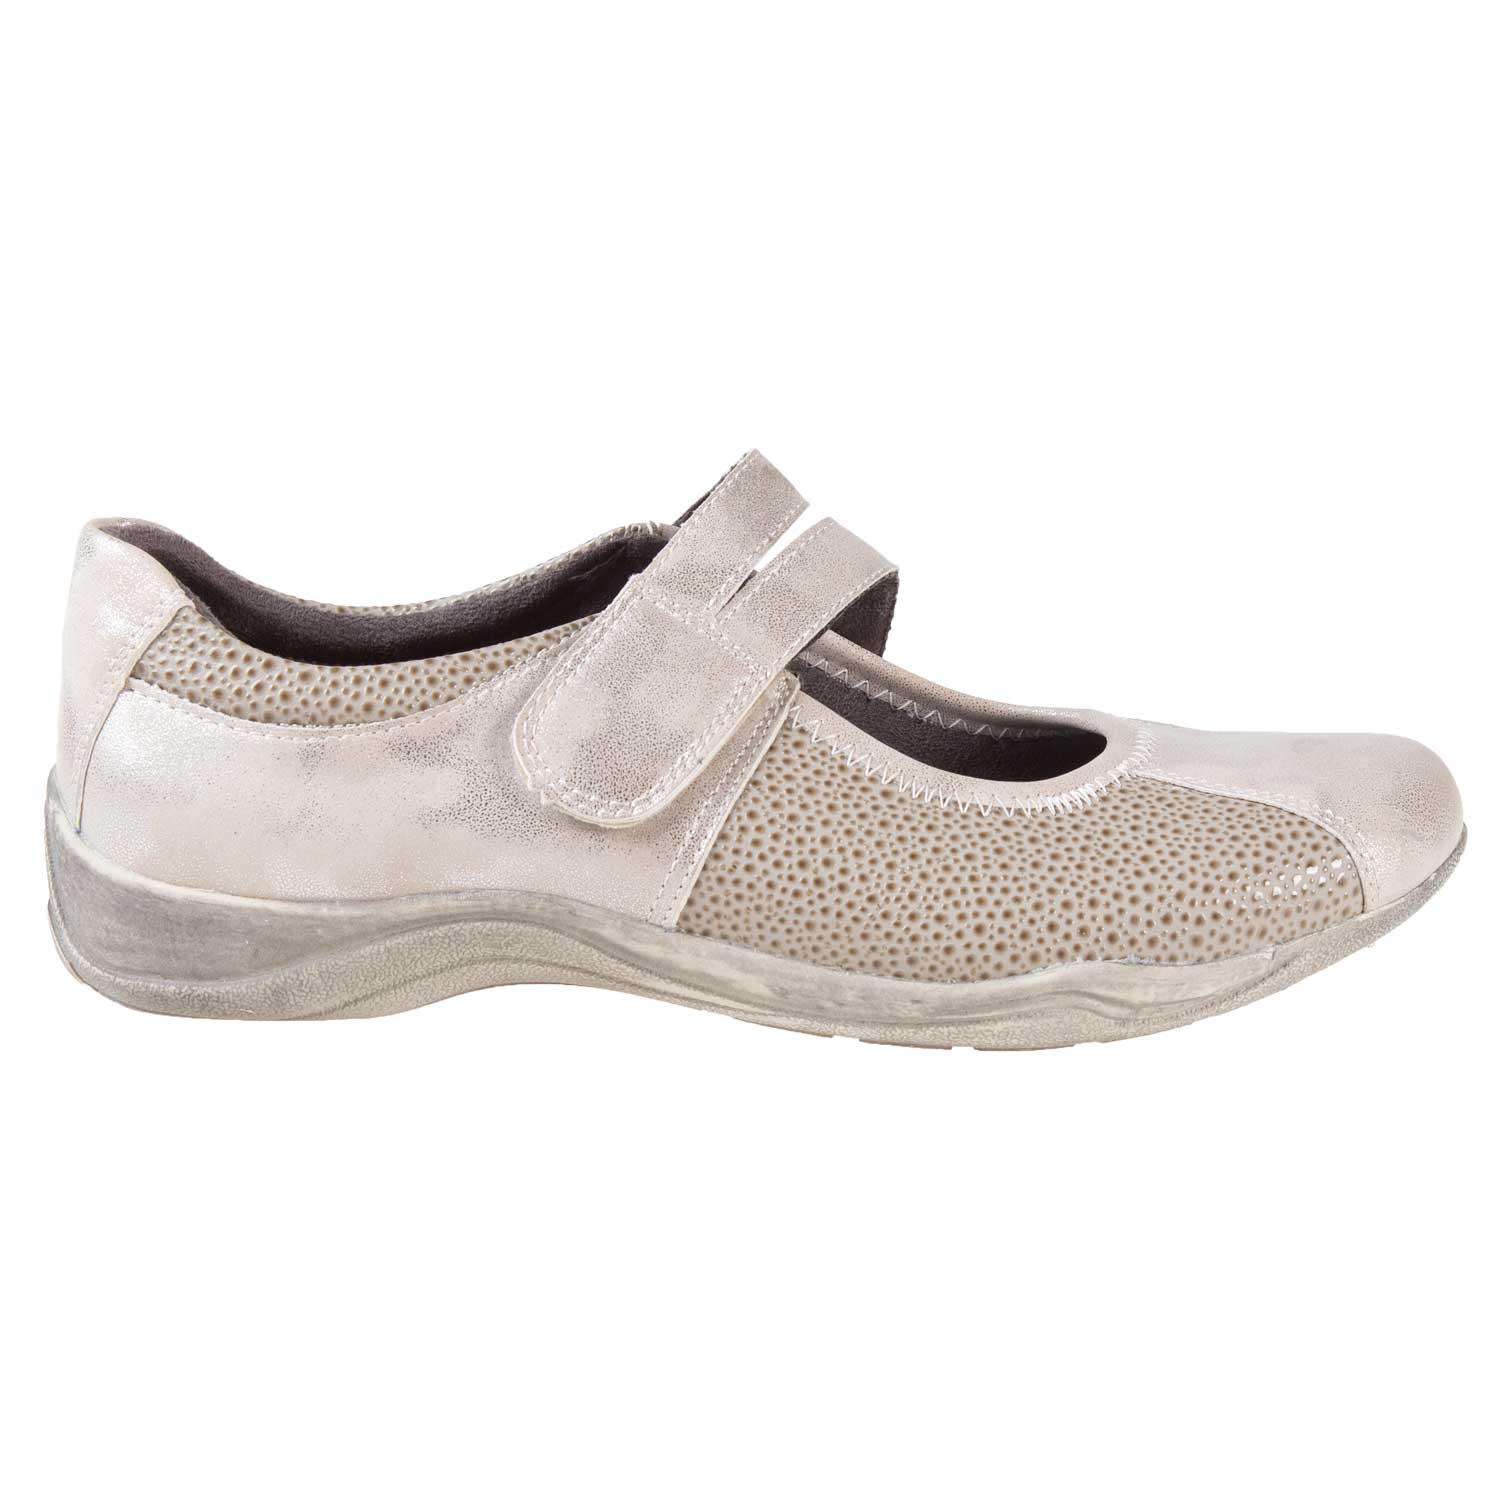 Chaussures de sport à enfiler pour femmes à bout rond avec fermeture velcro, taille 6